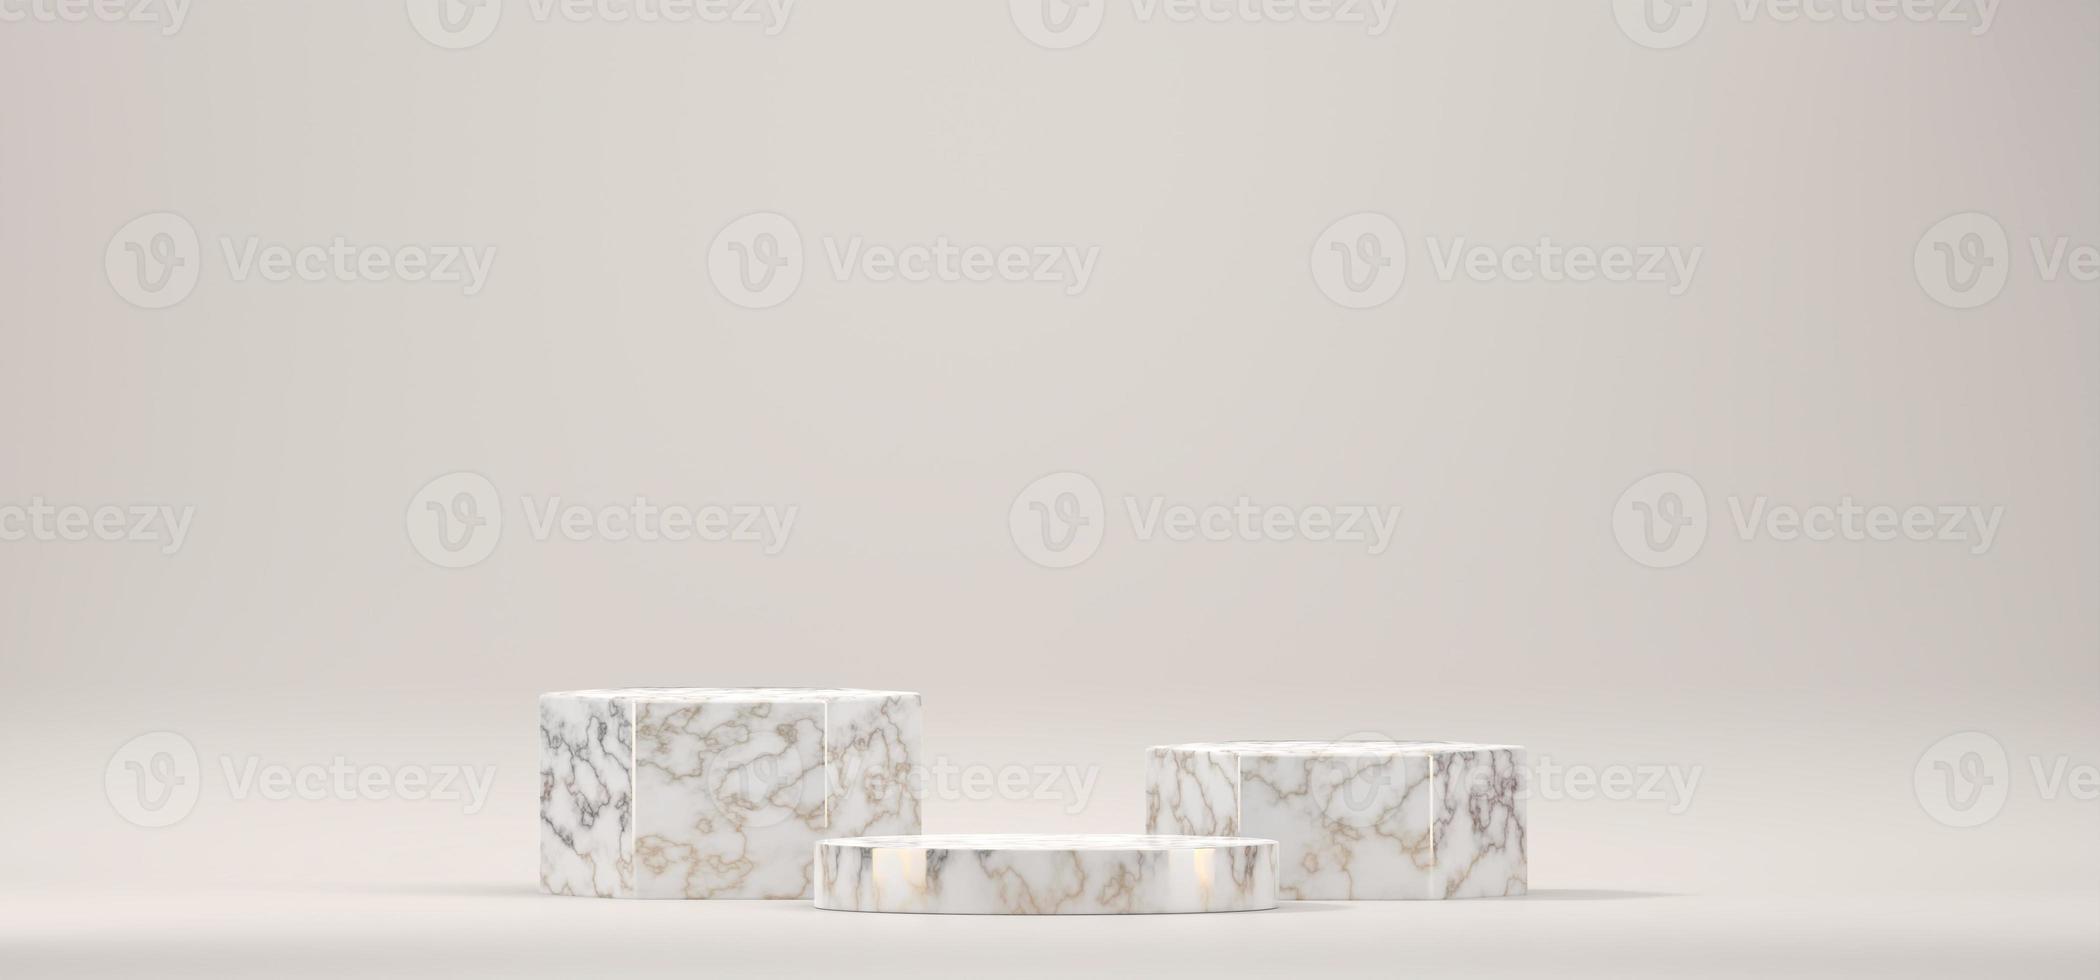 Plataforma de podio de escenario de mármol para producto, render 3d foto